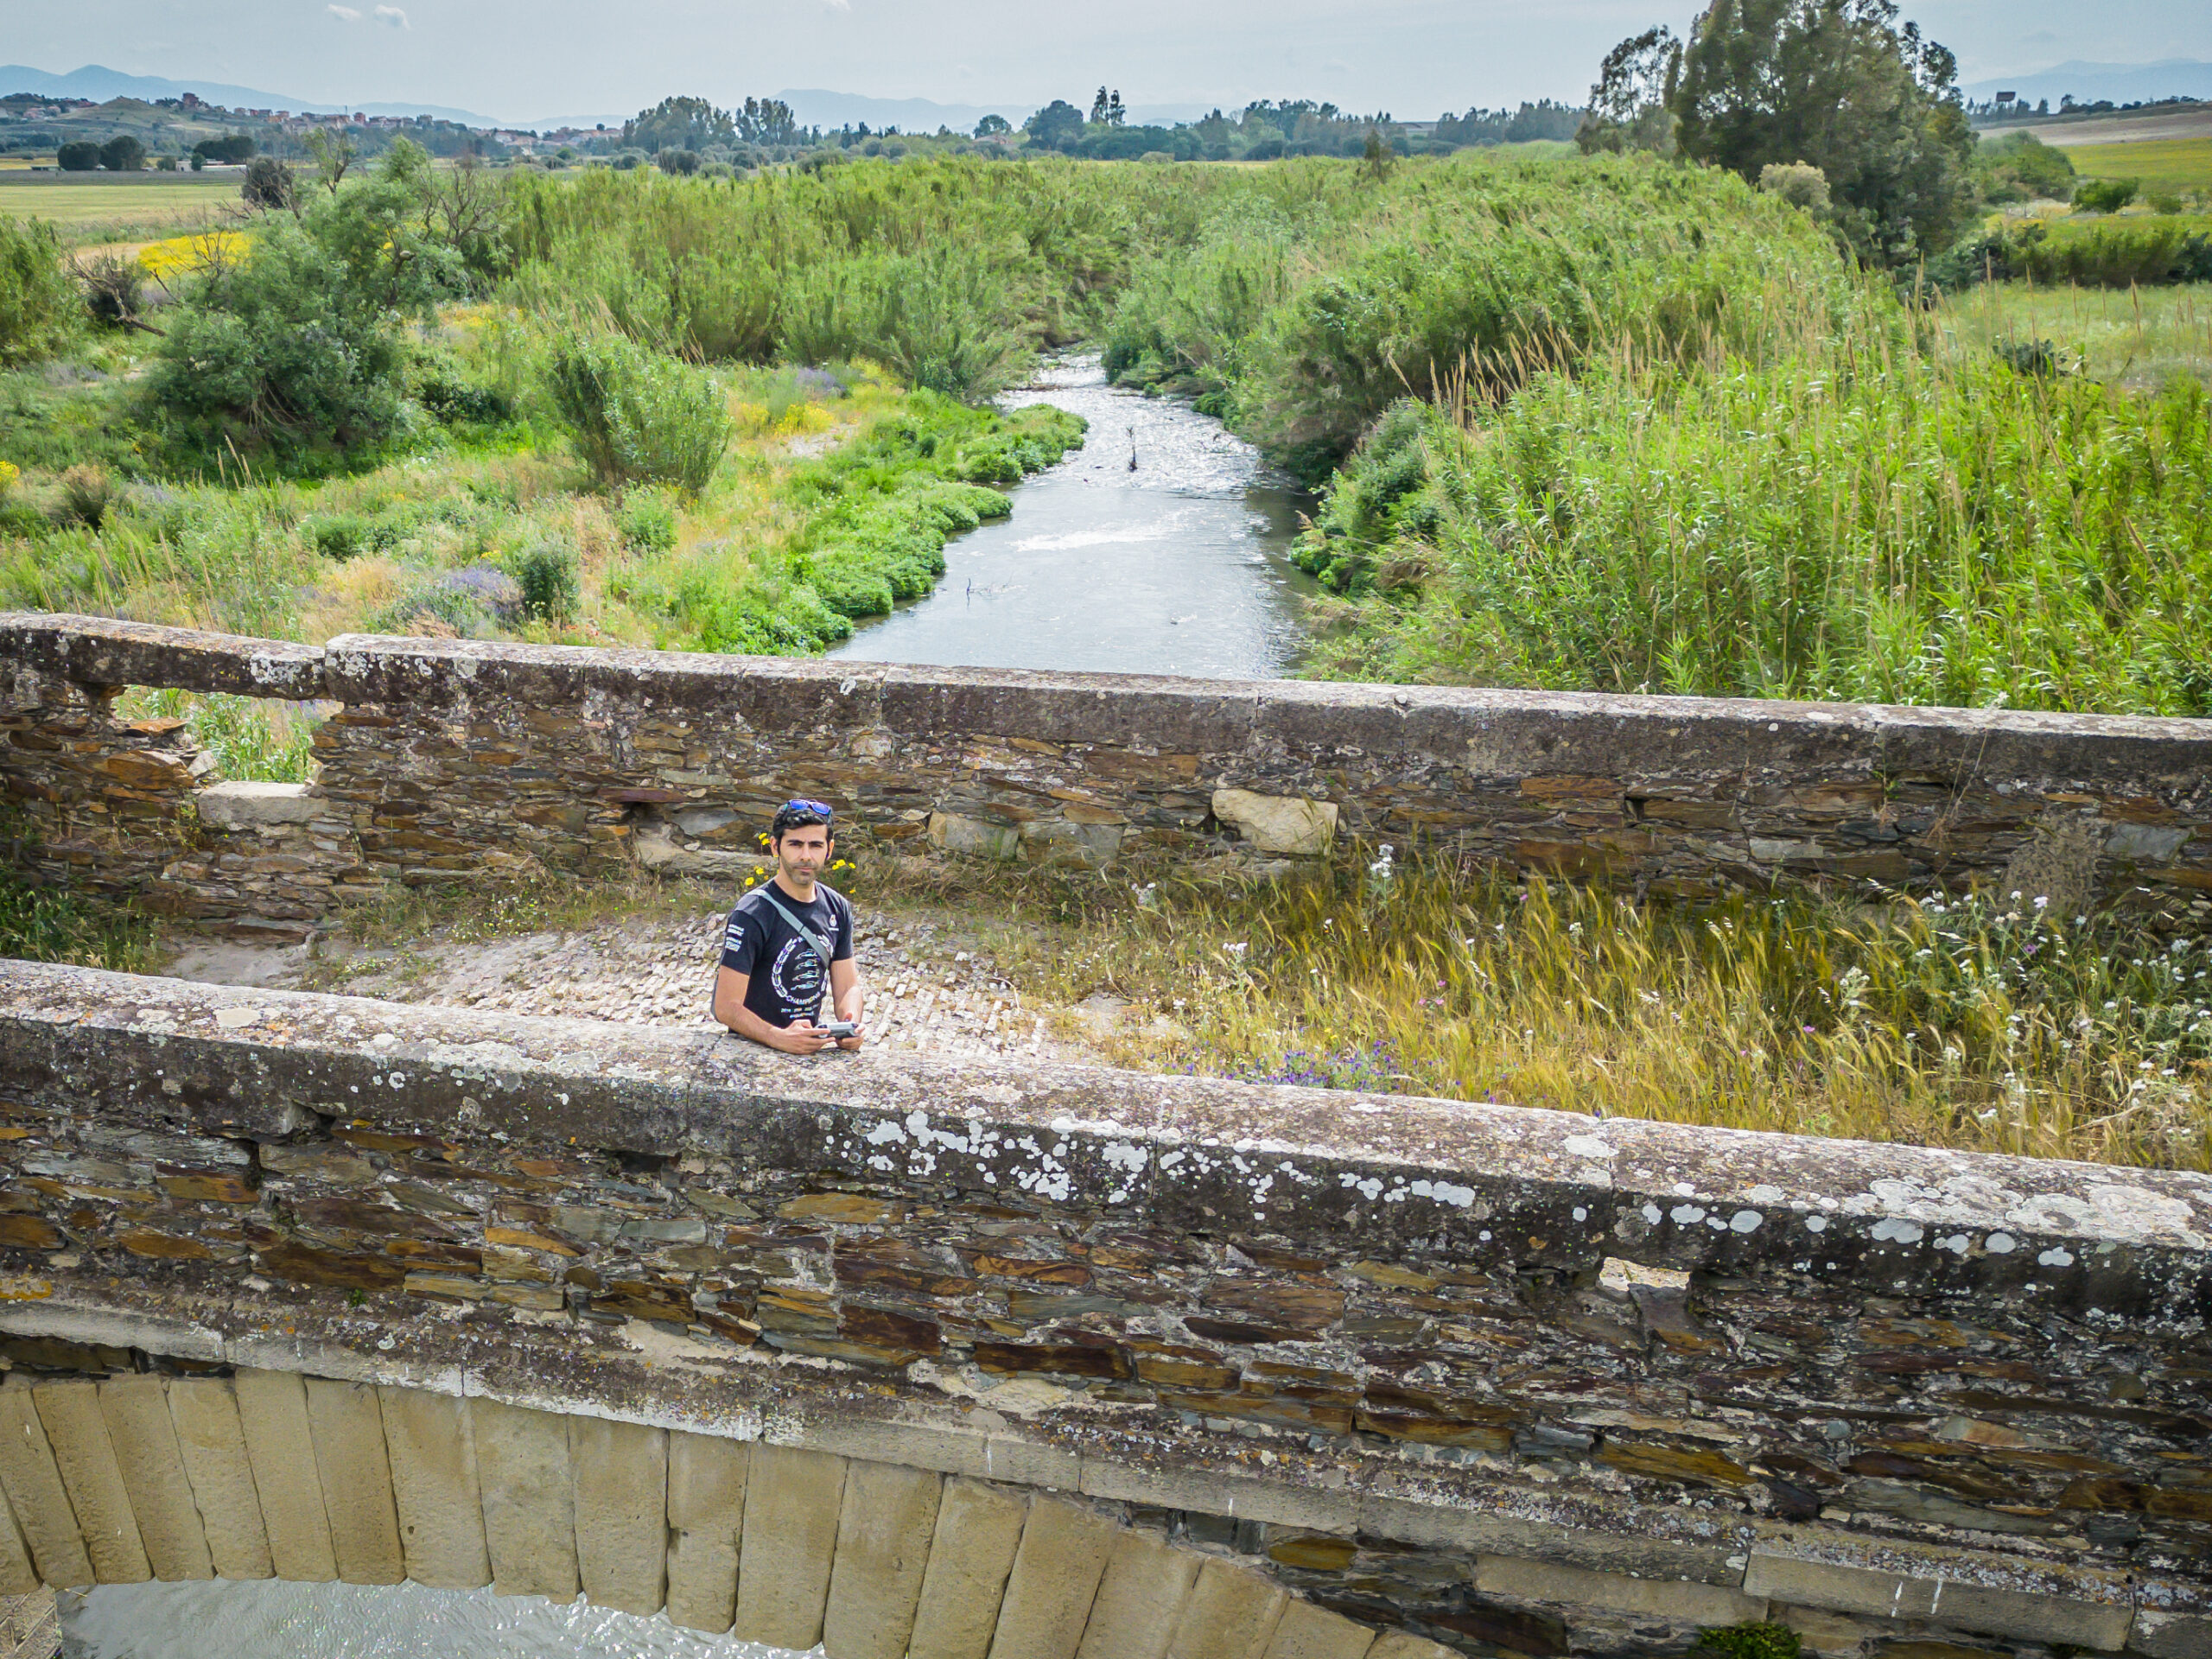 Foto di Renato, scattata dal drone mentre si trovava sopra un antico ponte romano nei pressi di Ussana